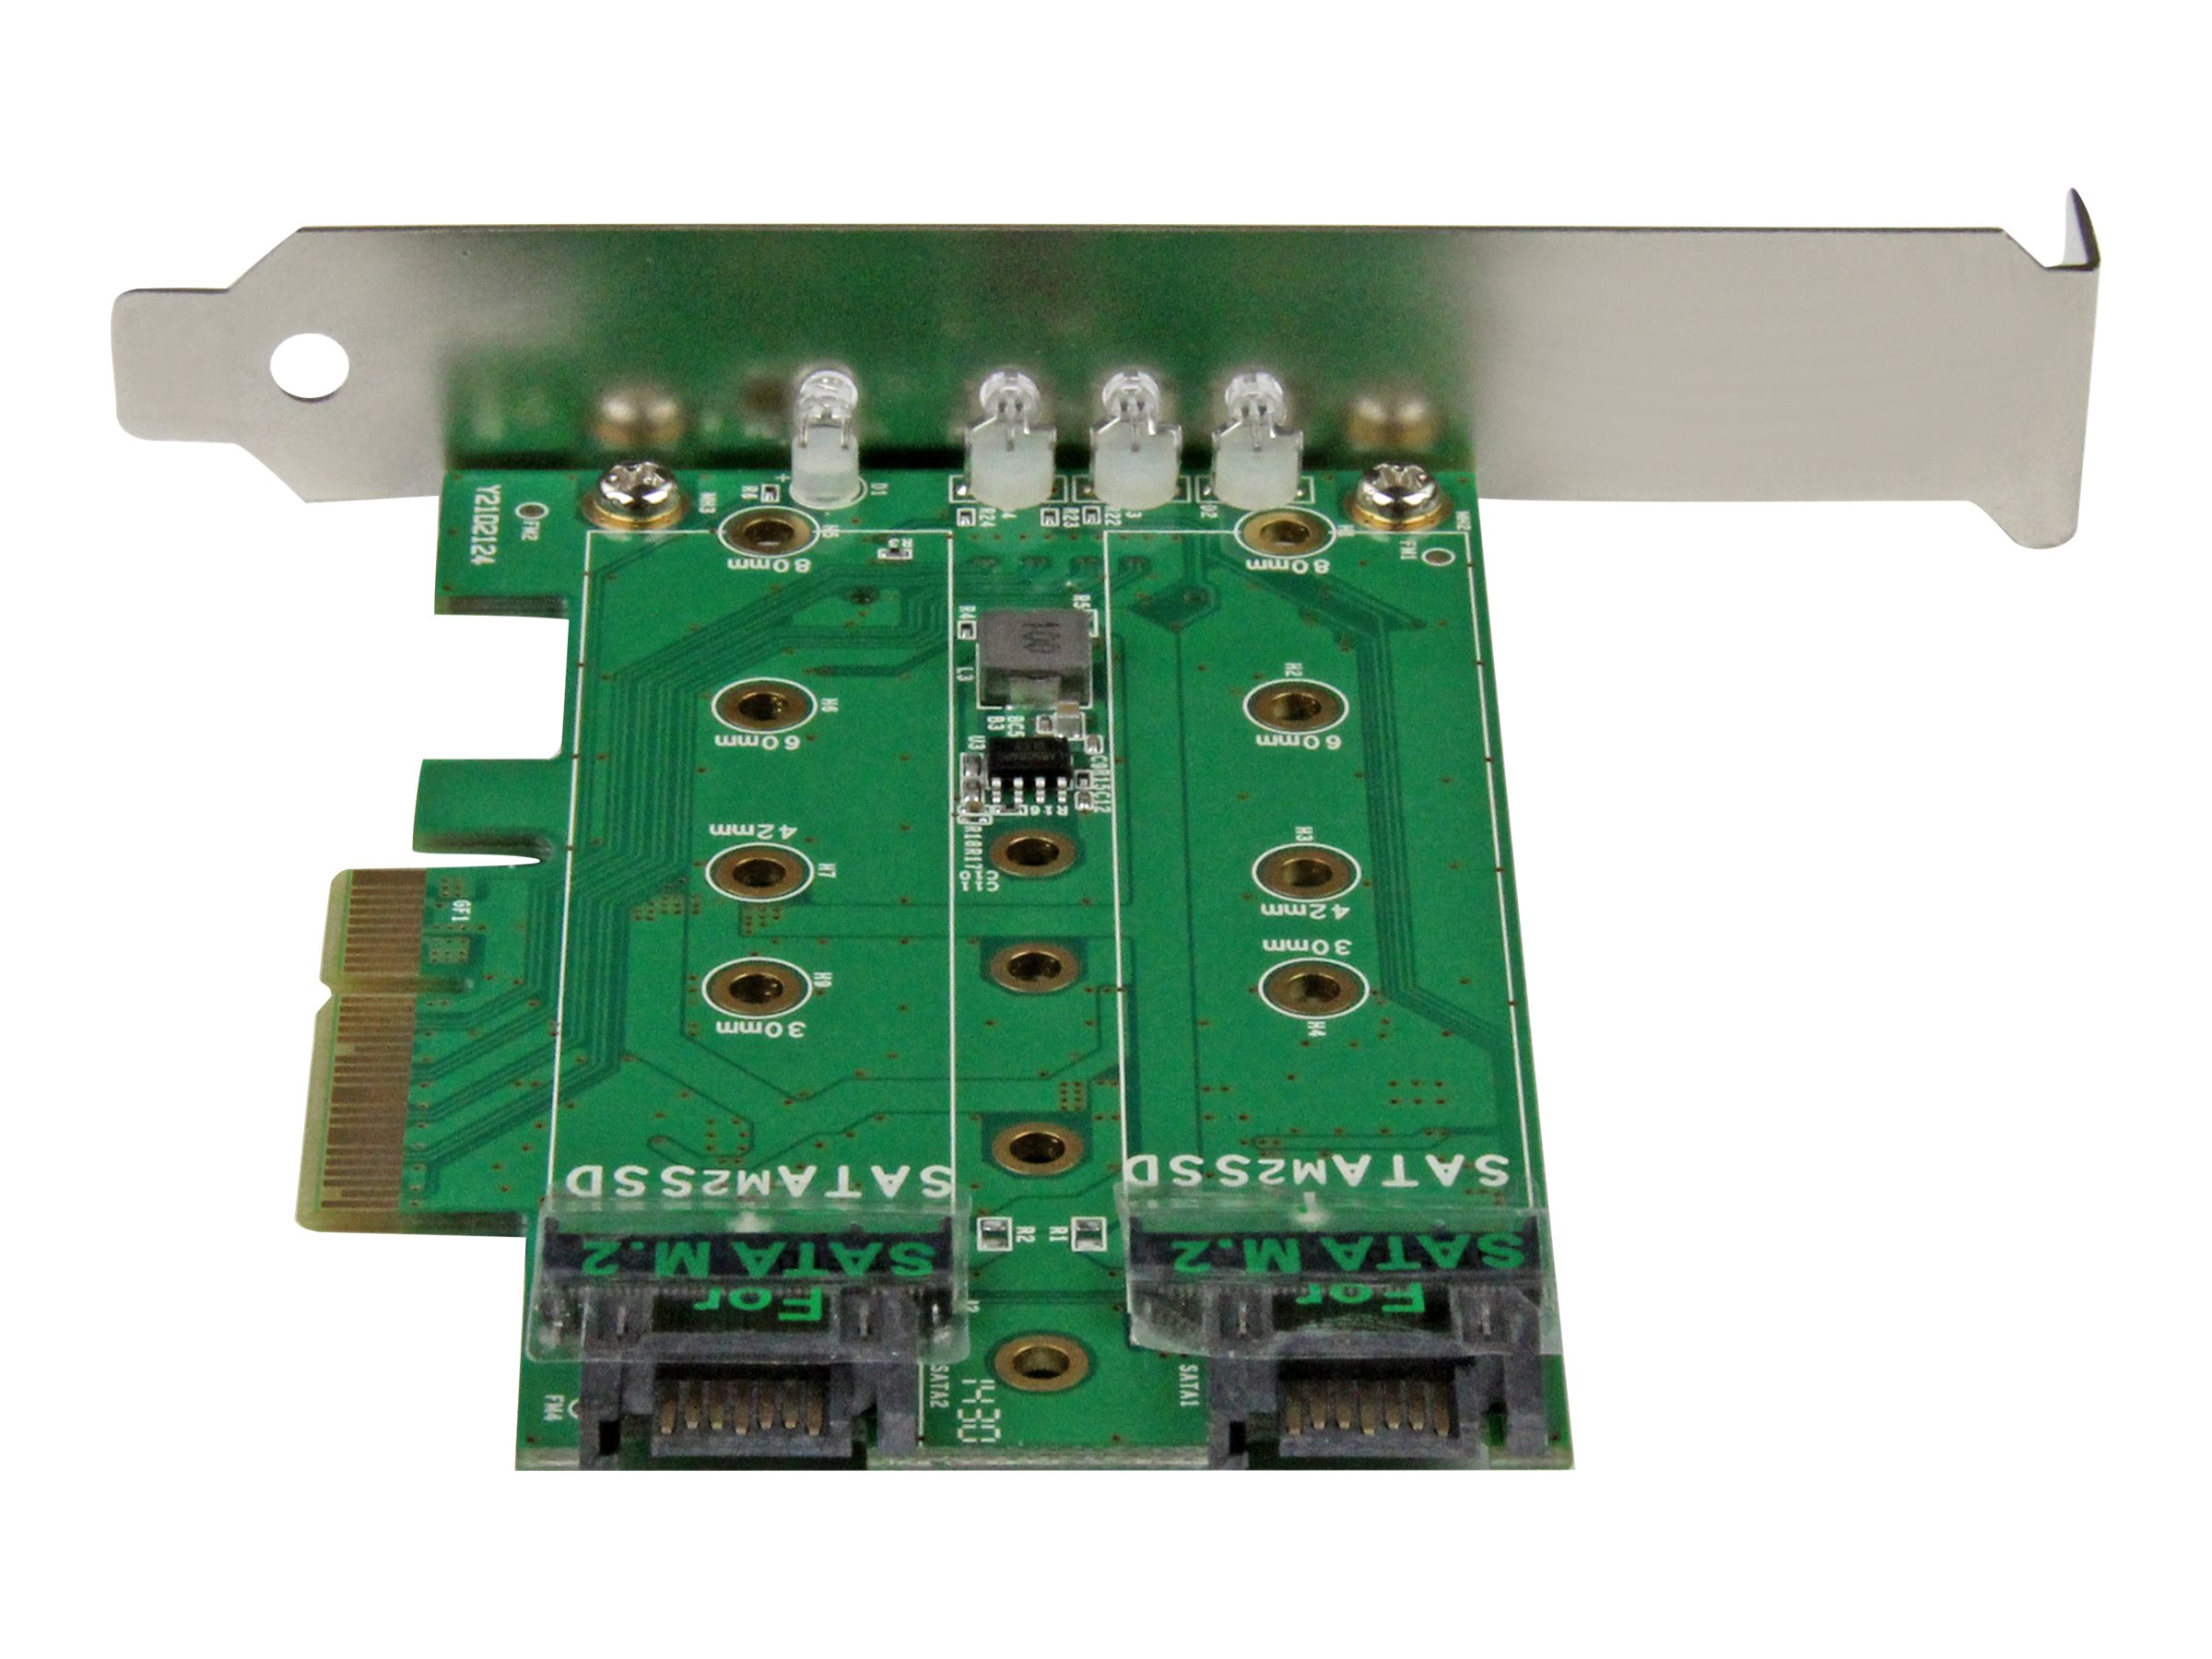 StarTech.com Adaptateur SSD M.2 NGFF à 3 ports - 1x M.2 PCIe (NVMe), 2x M.2 SATA III - PCIe 3.0 - Carte M.2 NGFF PCI Express - Adaptateur d'interface - M.2 - M.2 Card / SATA 6Gb/s - PCIe 3.0 - PEXM2SAT32N1 - Adaptateurs de stockage